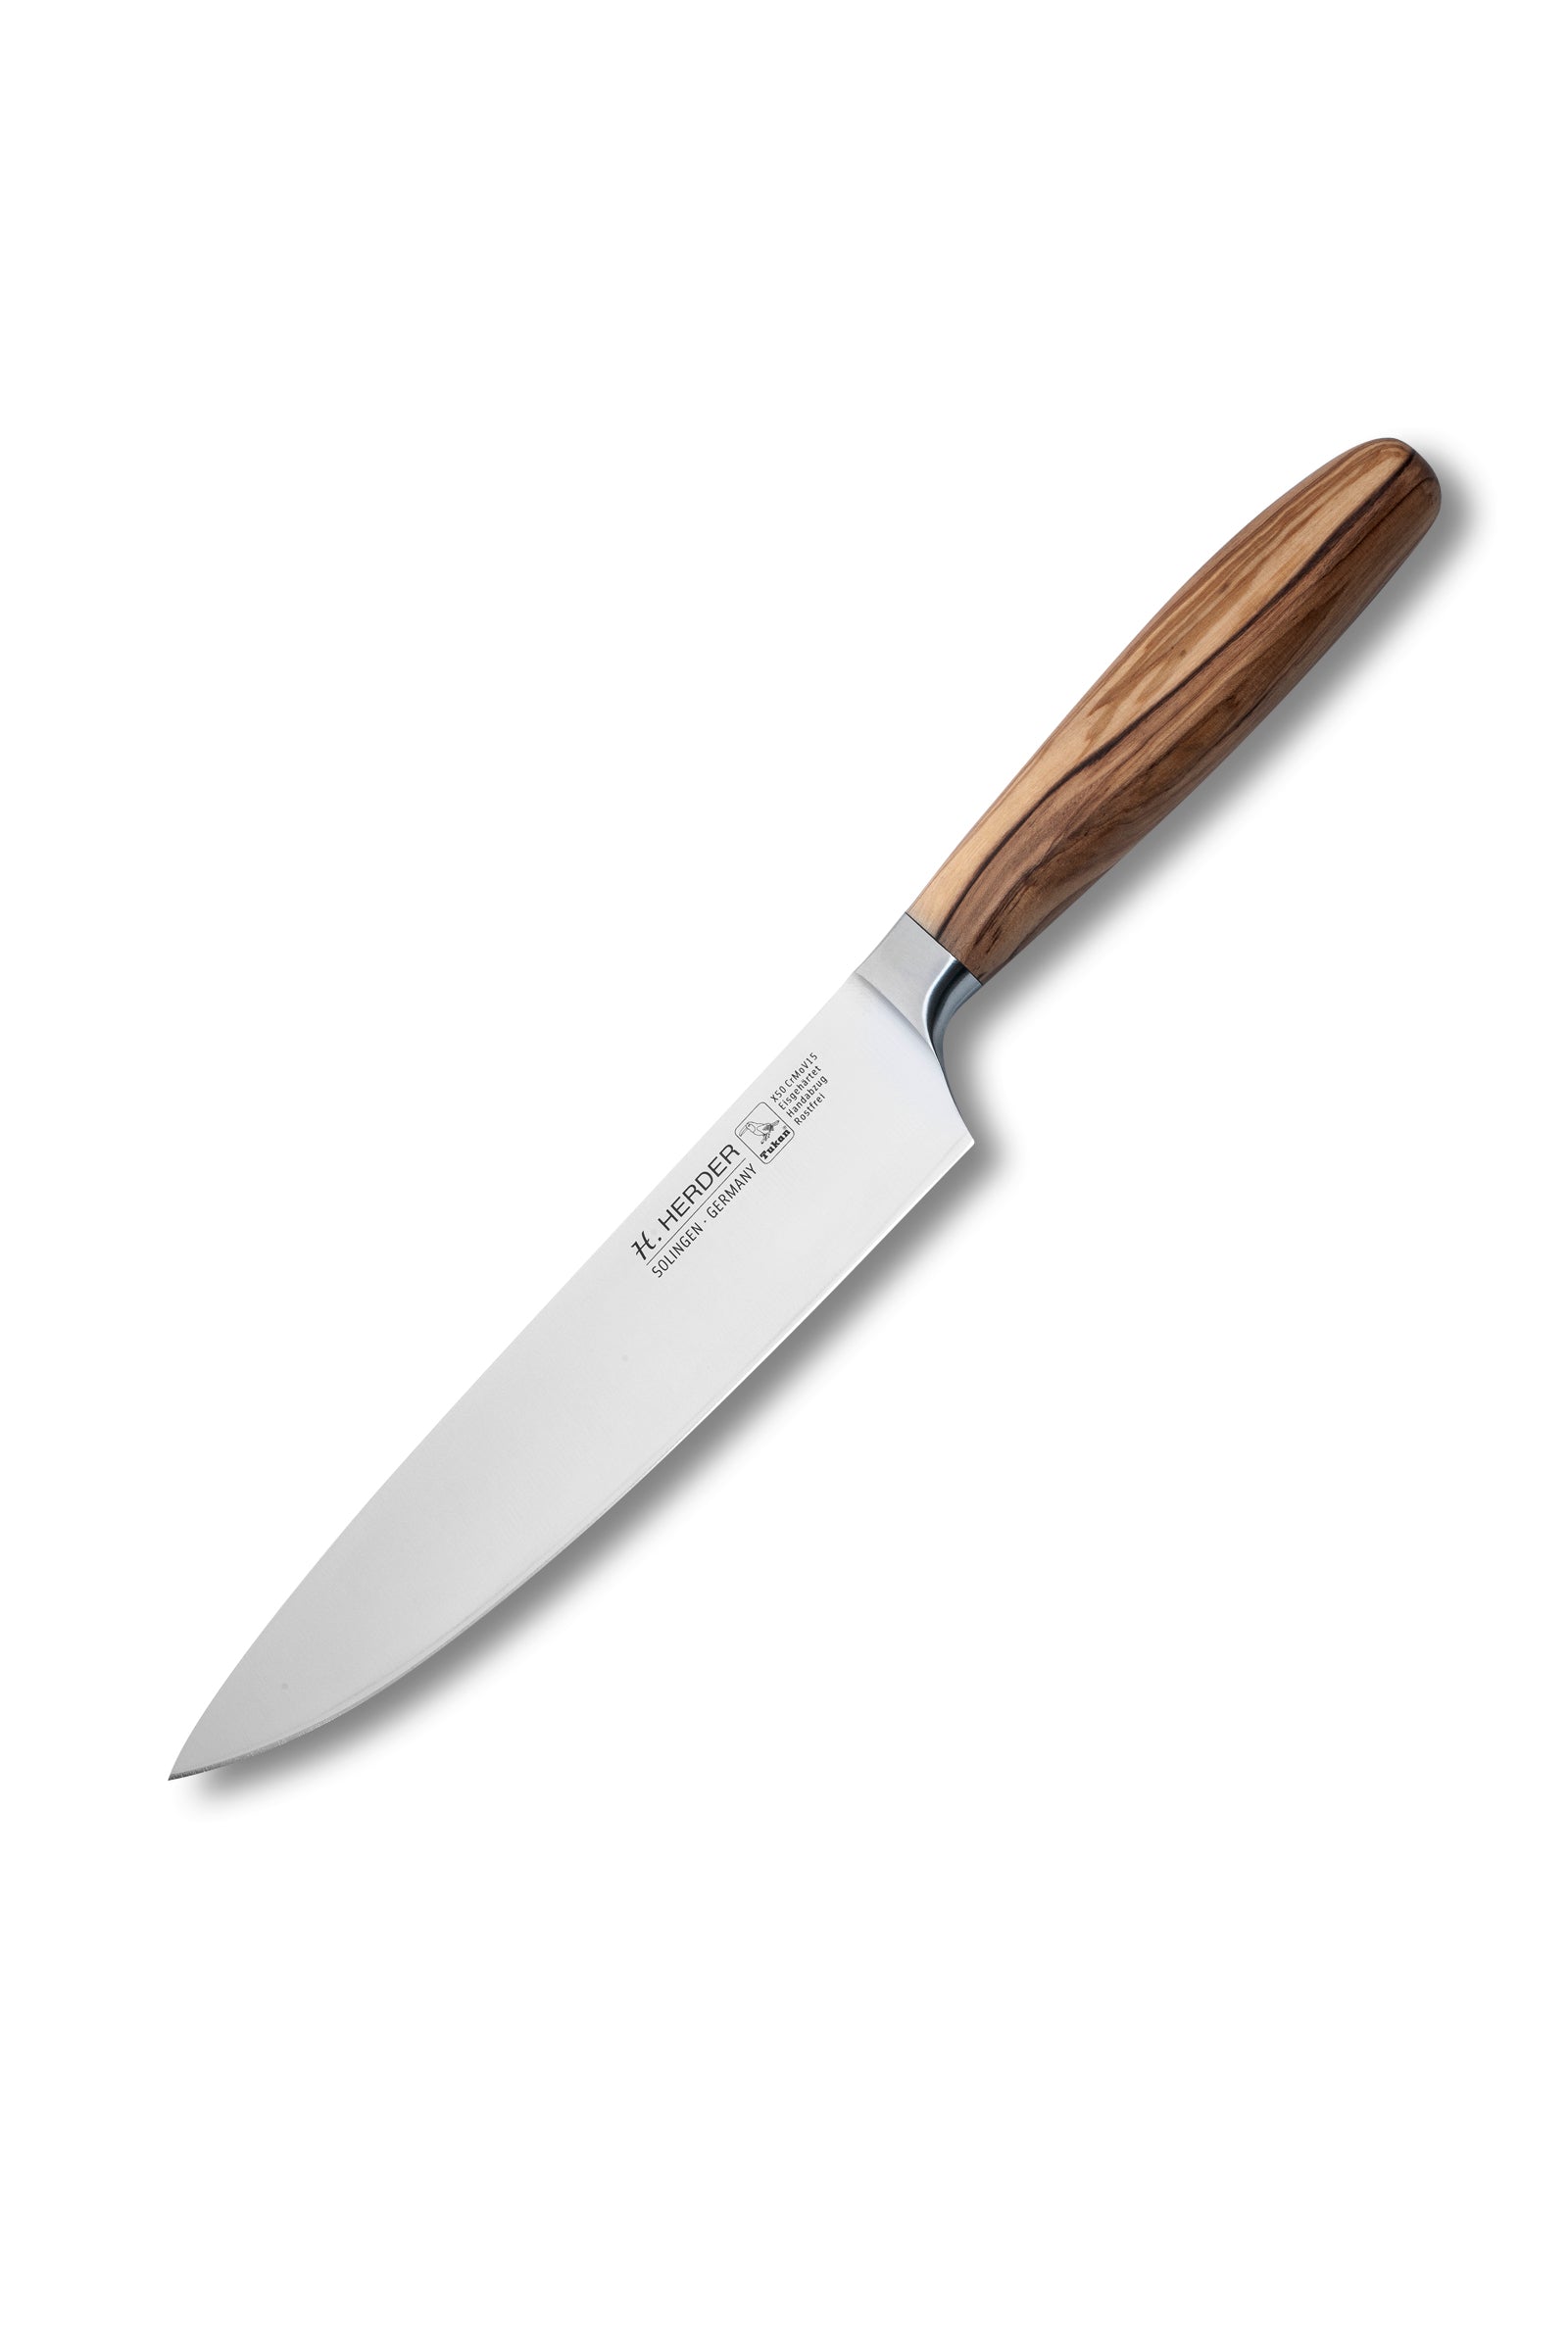 Couteau de chef Eterno, bois d'olivier, longueur de lame 21 cm, forgé